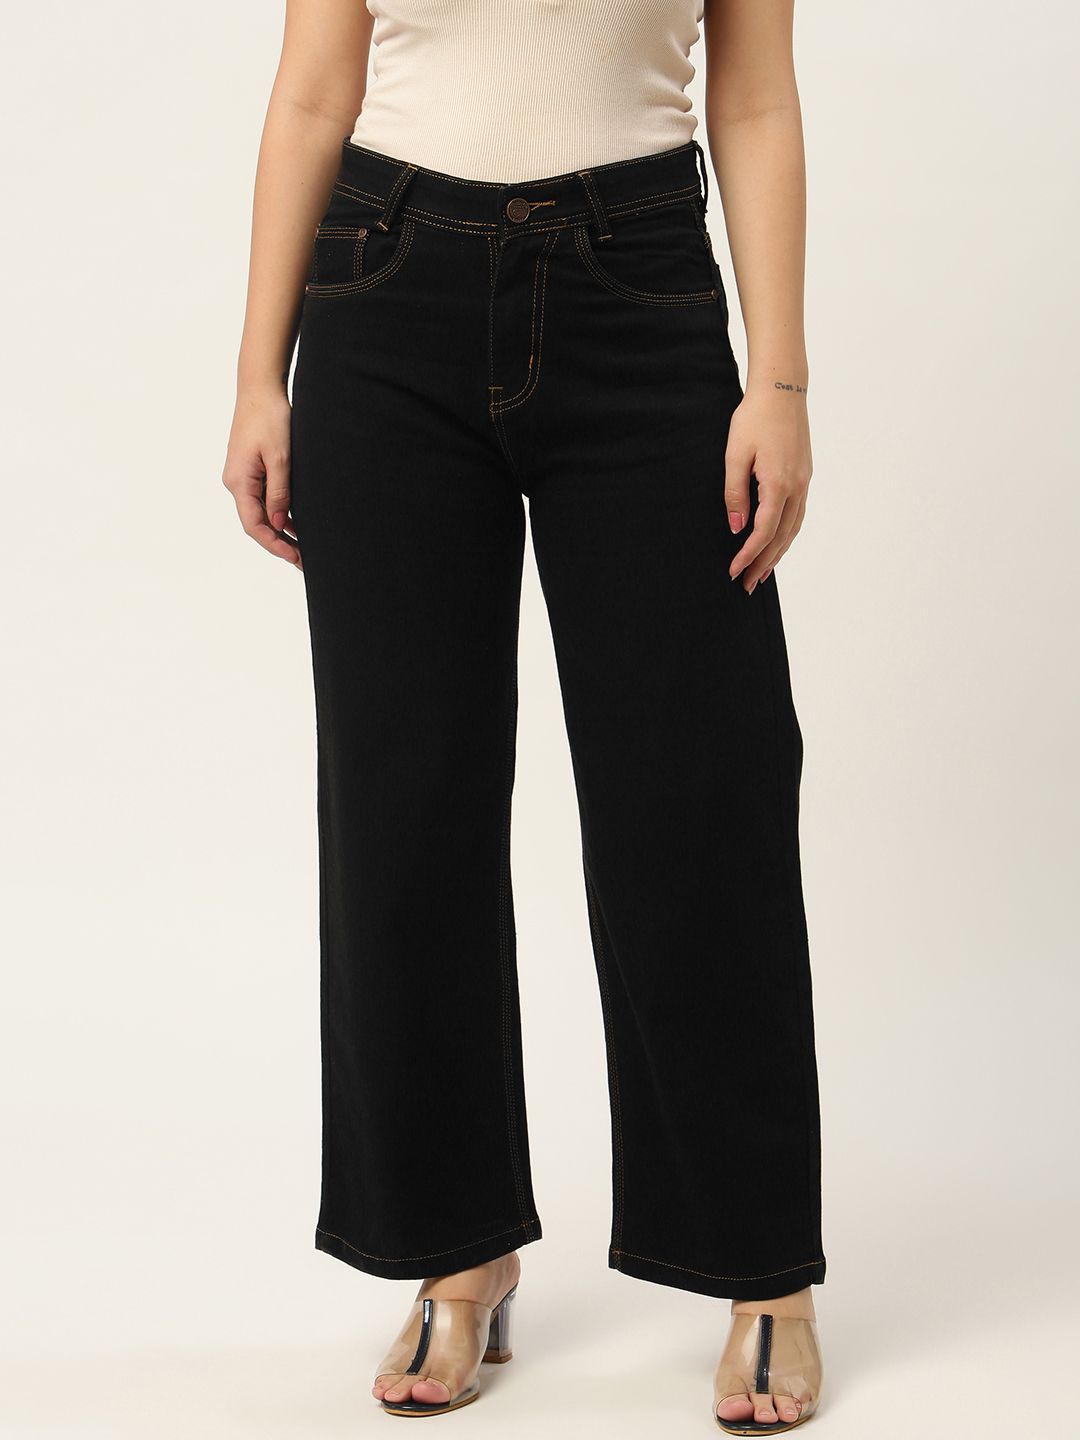 Latest PARIS HAMILTON Jeans arrivals - Women - 4 products